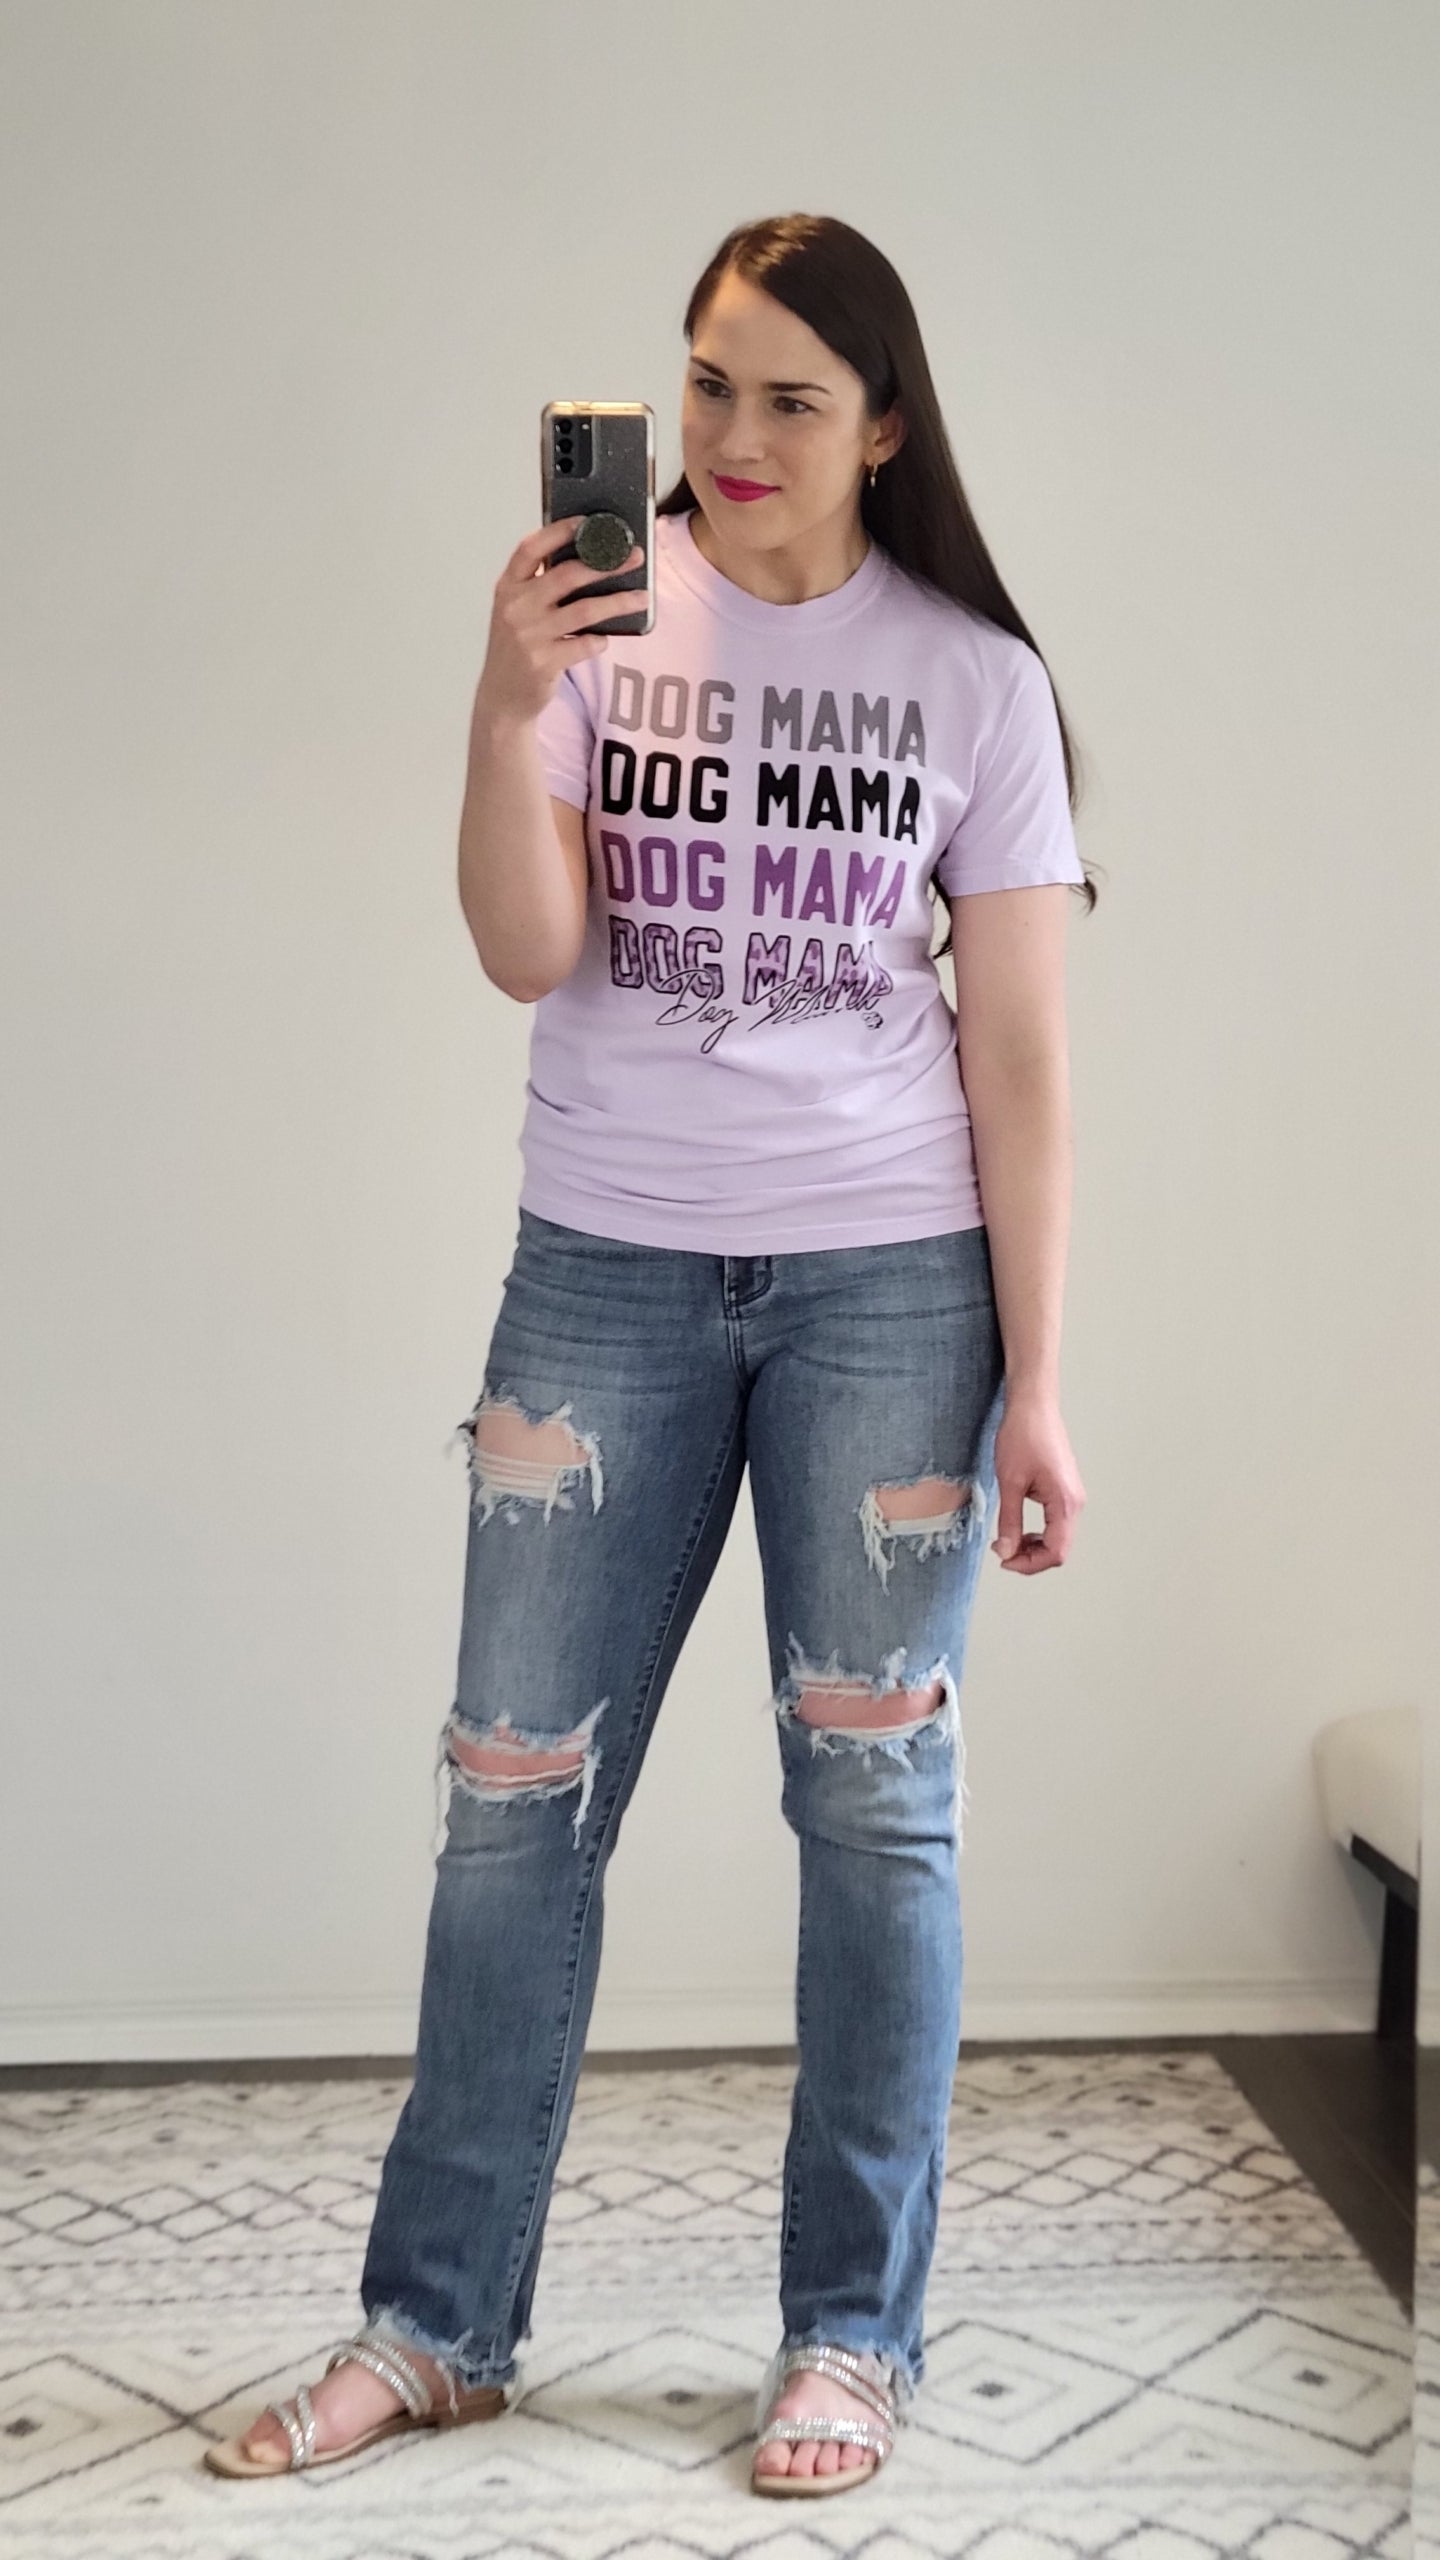 Lavender "Dog Mama" Crew Neck Graphic Tee “Phoebe” 